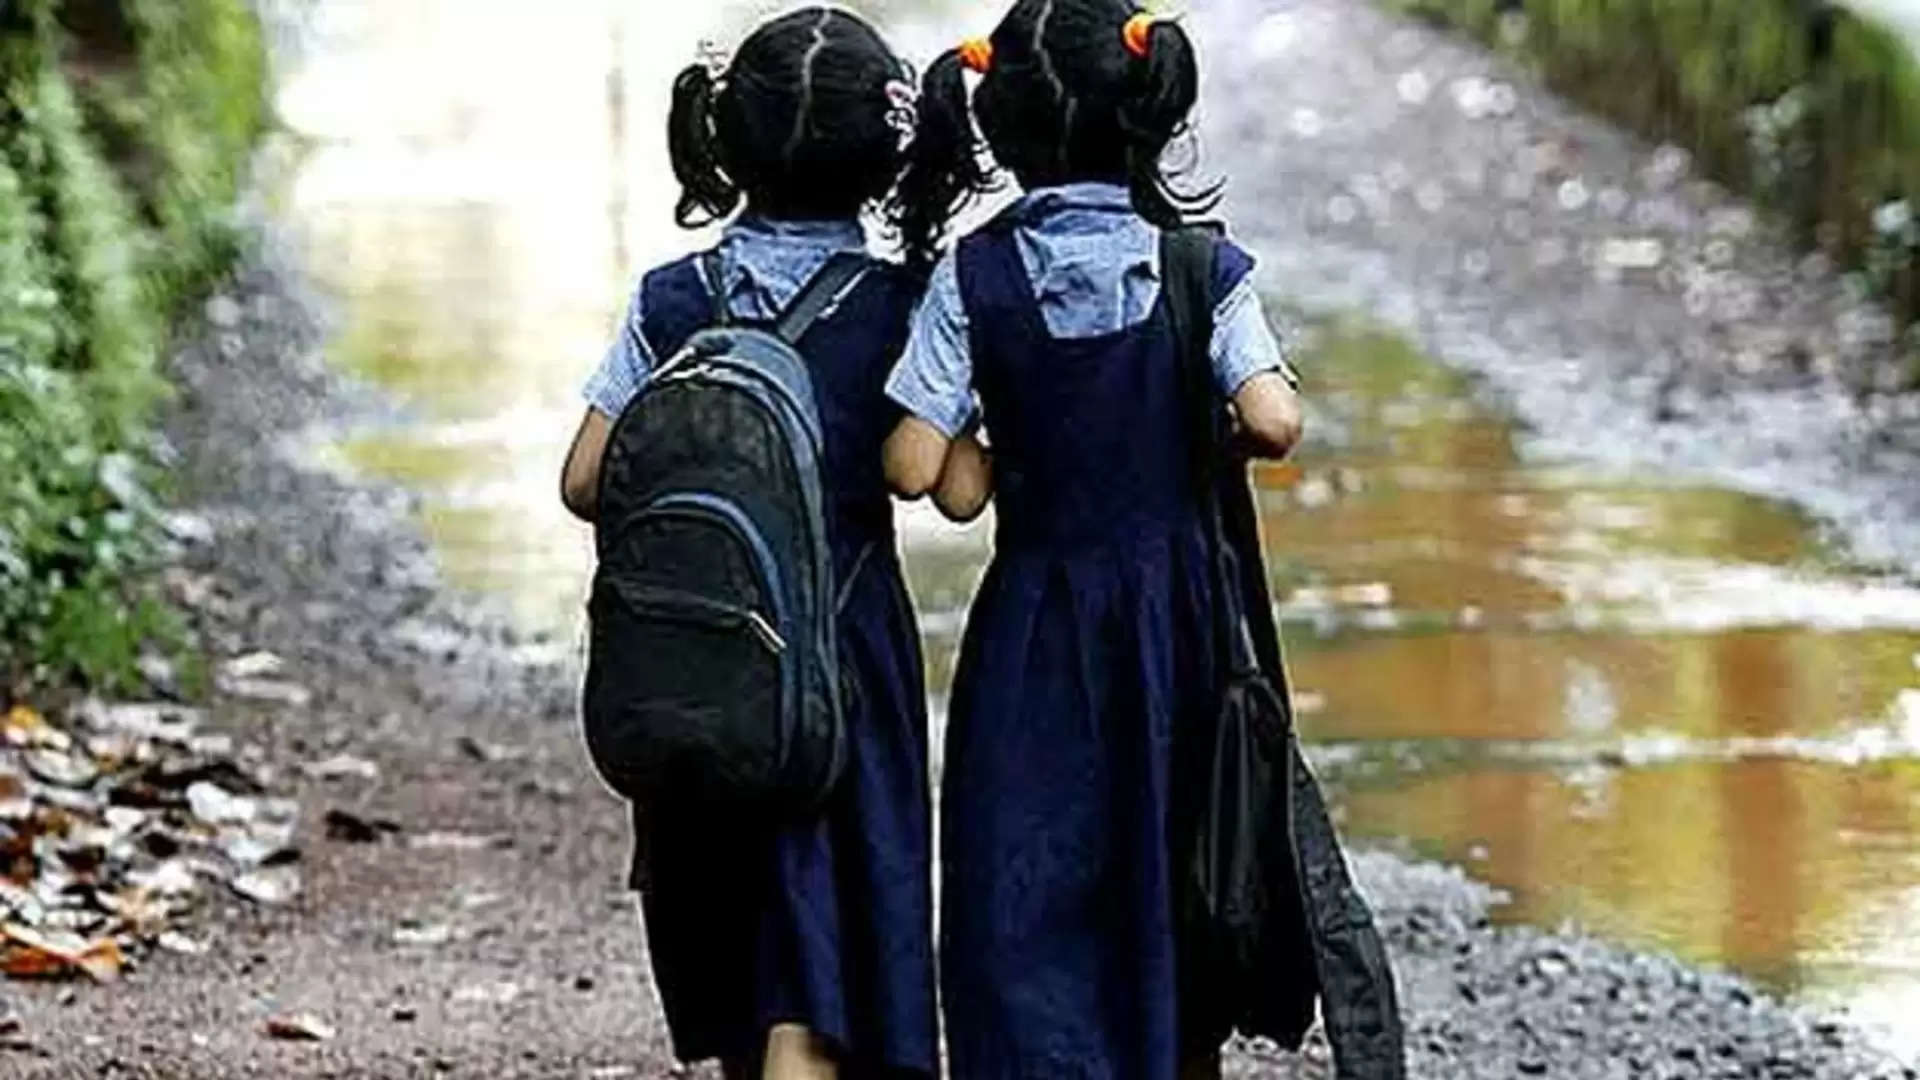 #BREAKING: சென்னை உட்பட 17 மாவட்டங்களில் இன்று பள்ளிகளுக்கு விடுமுறை!!